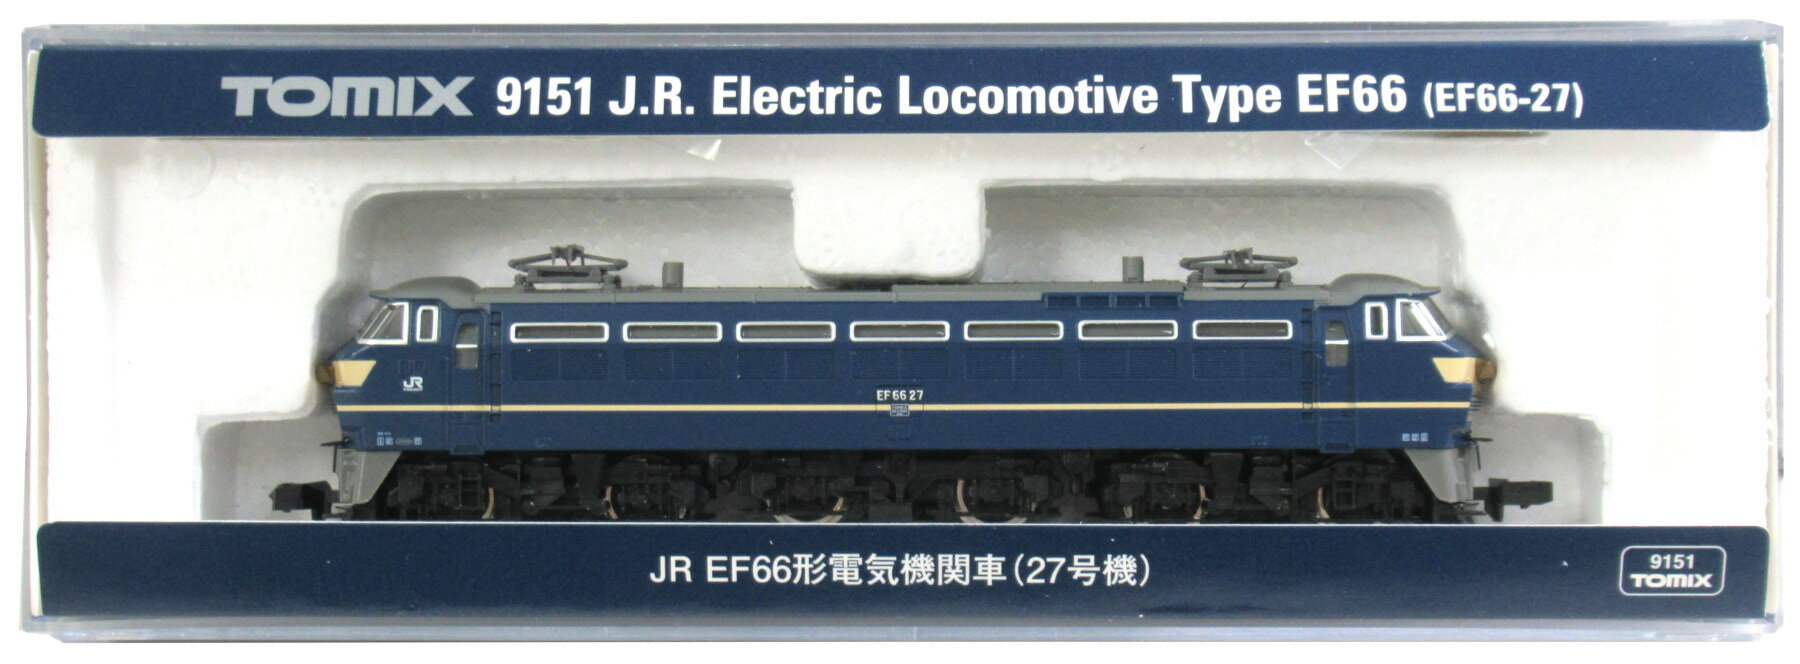 【中古】Nゲージ TOMIX(トミックス) 9151 JR EF66形 電気機関車 (27号機) 2014年ロット 【A】